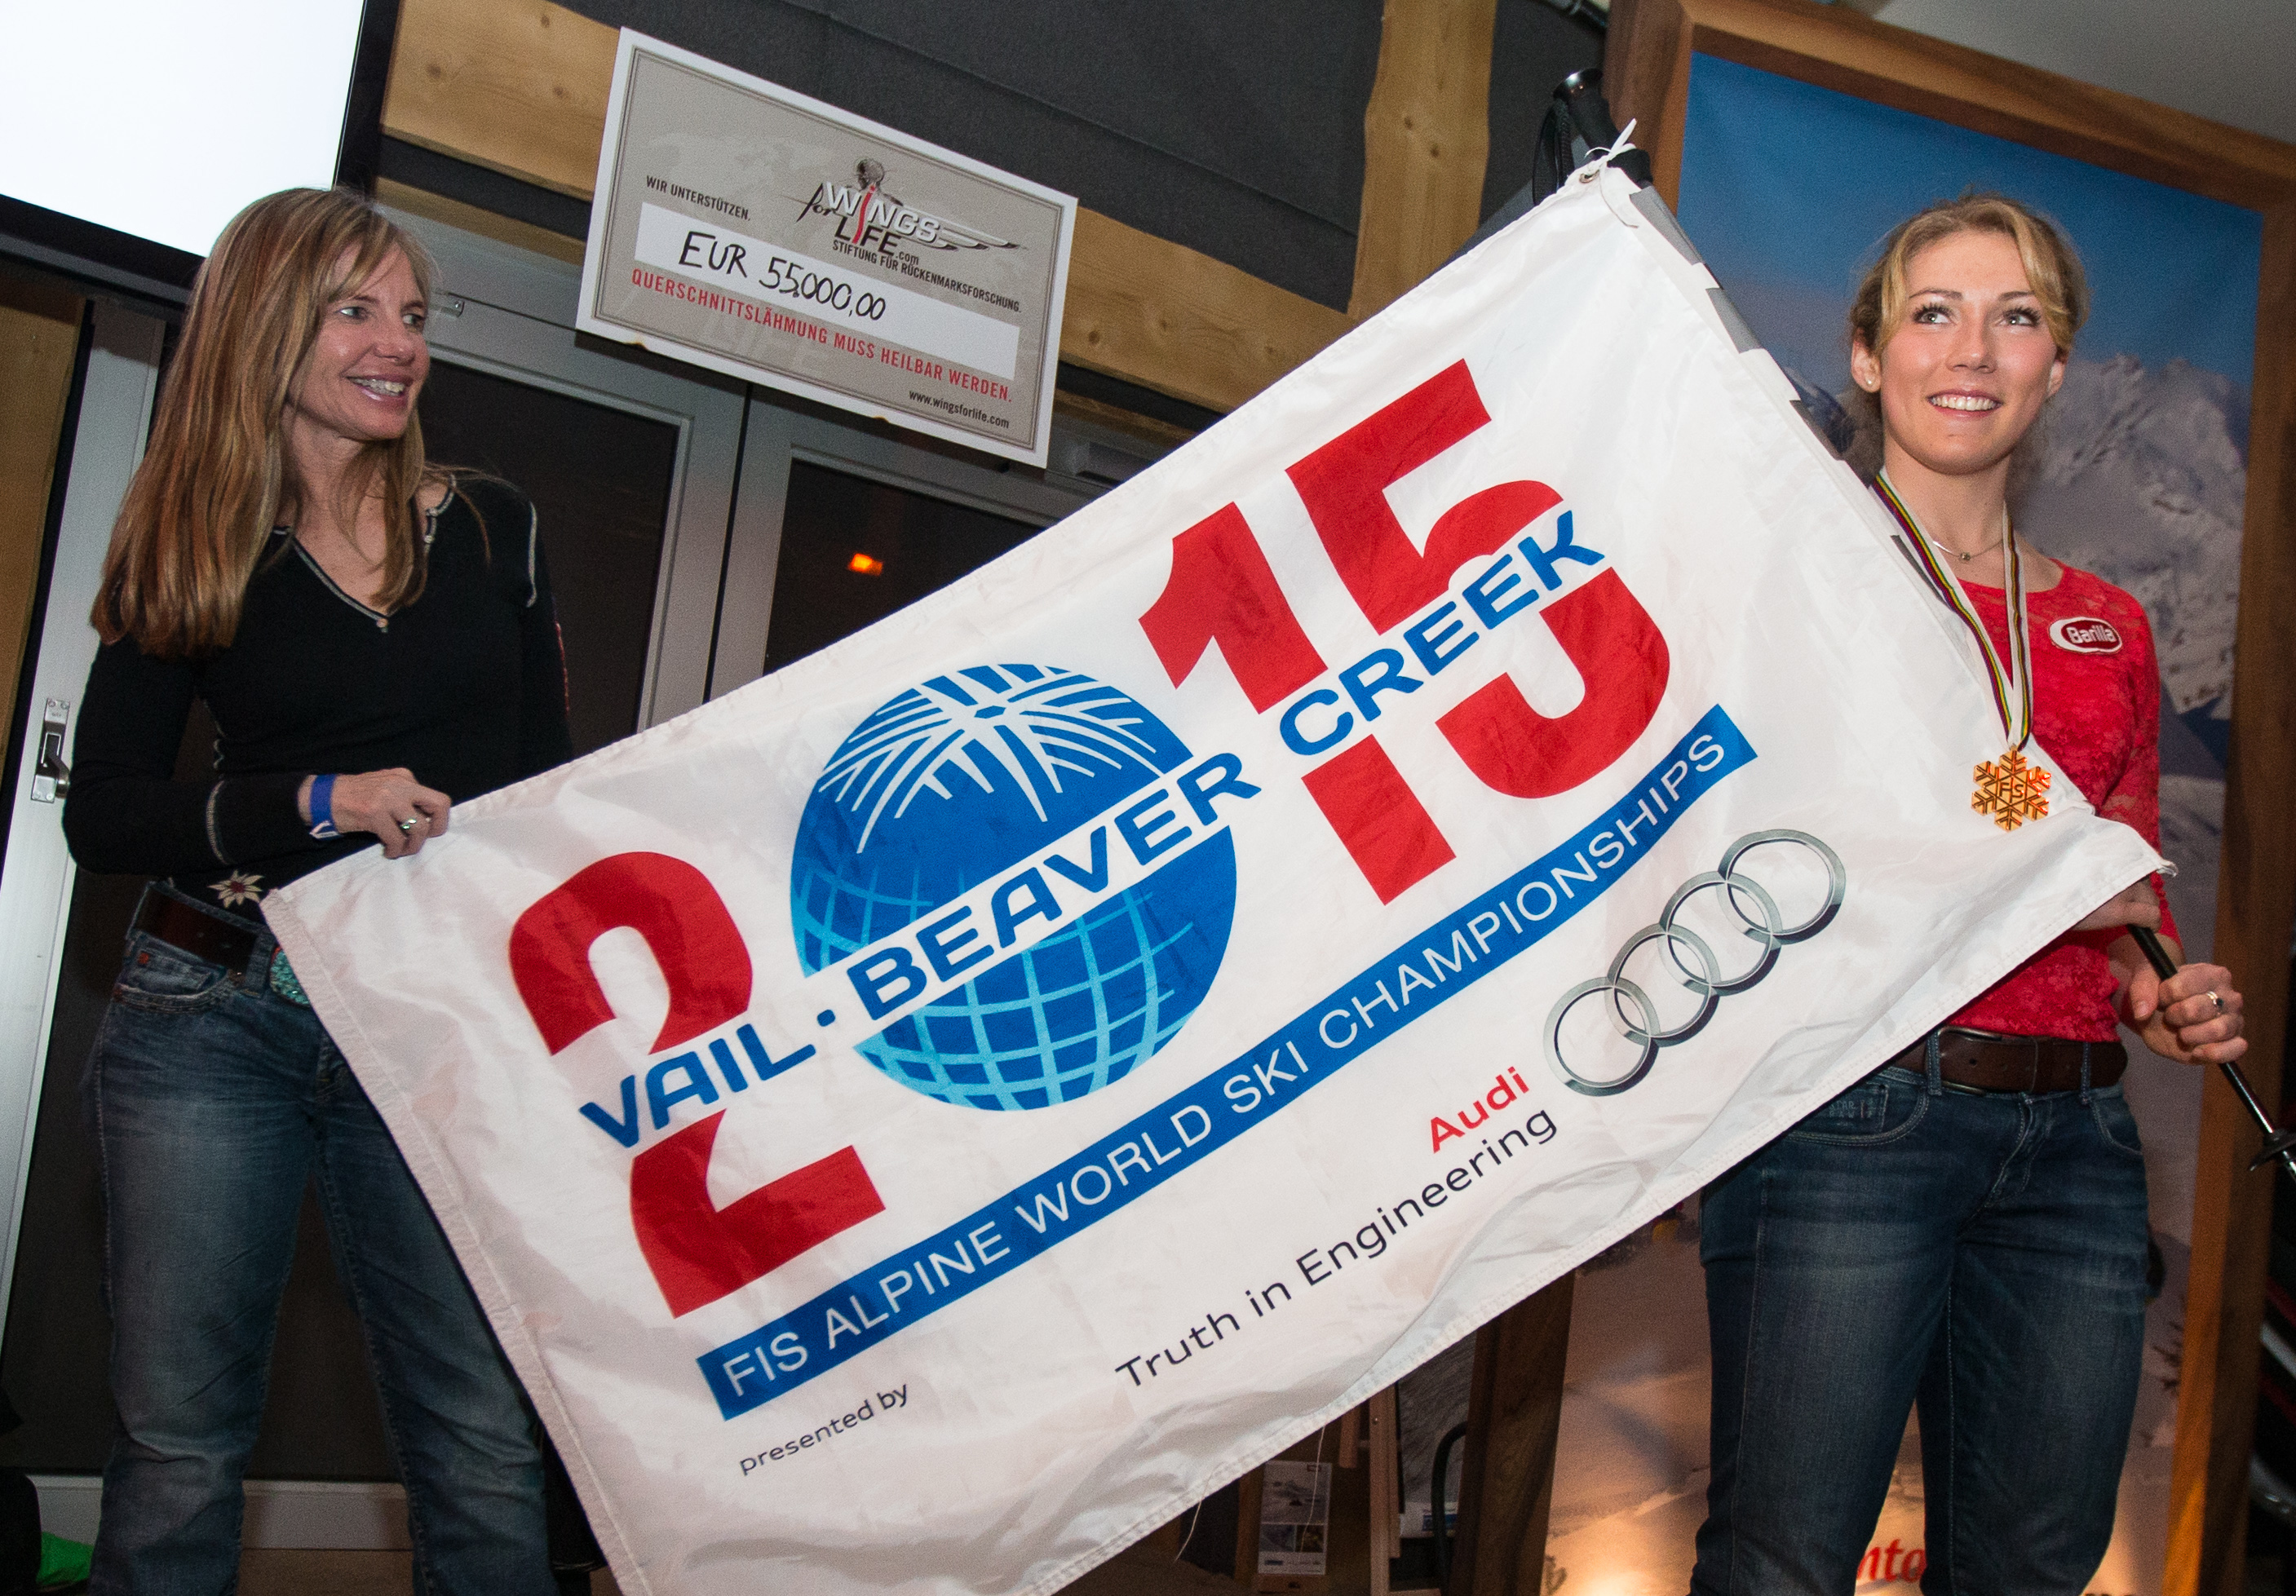 Die US-Amerikanerin Mikaela Shiffrin (rechts) präsentierte ihre Goldene im TirolBerg, sehr zur Freude von TirolBerg-Partner Vail/Beaver Creek 2015, vertreten durch Ceil Folz (Präsidentin der Vail Valley Foundation)